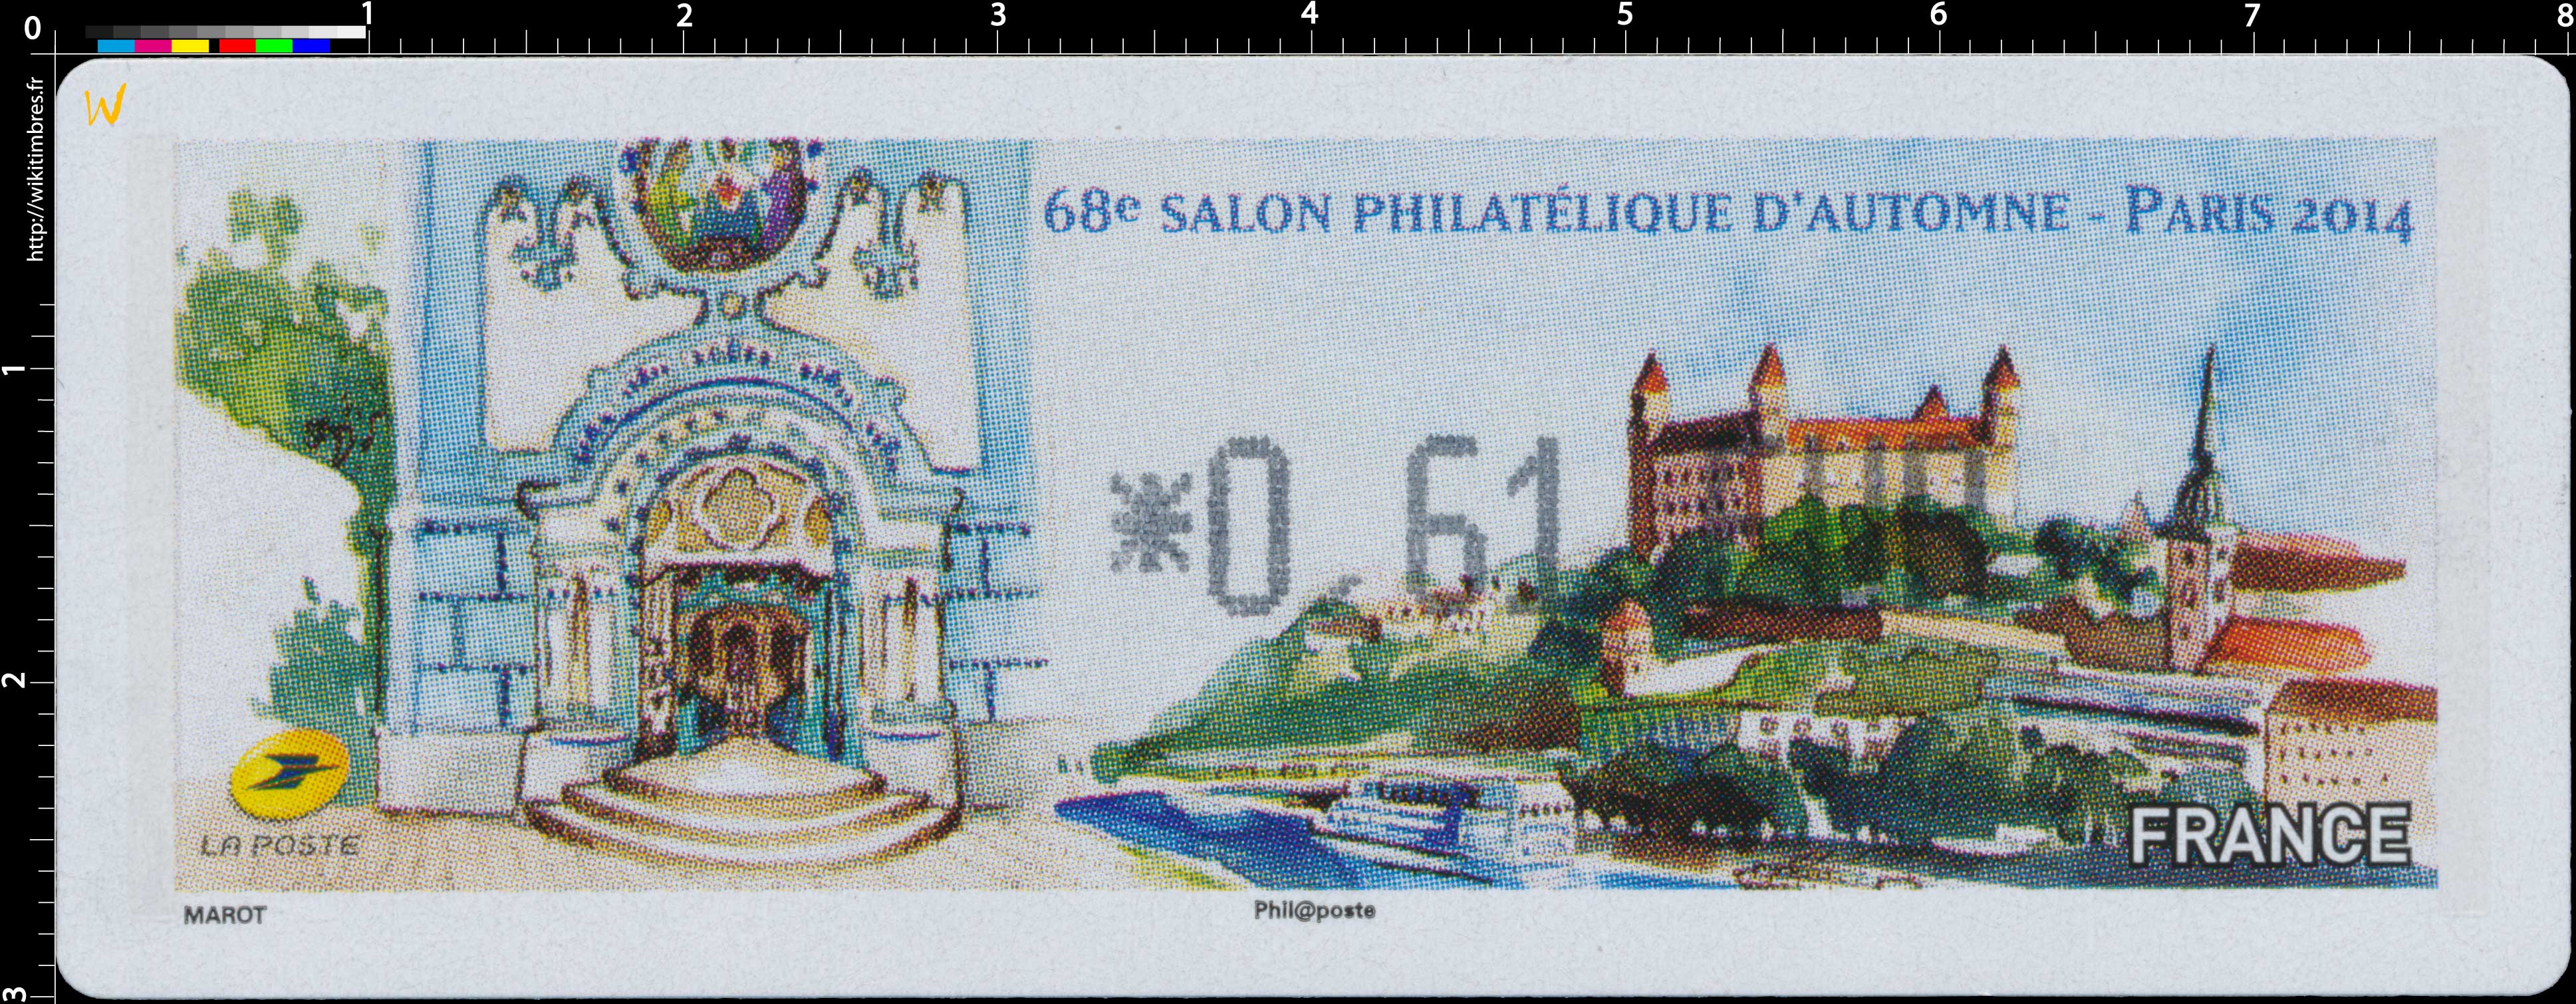 2014 68e Salon philatélique d'automne Paris